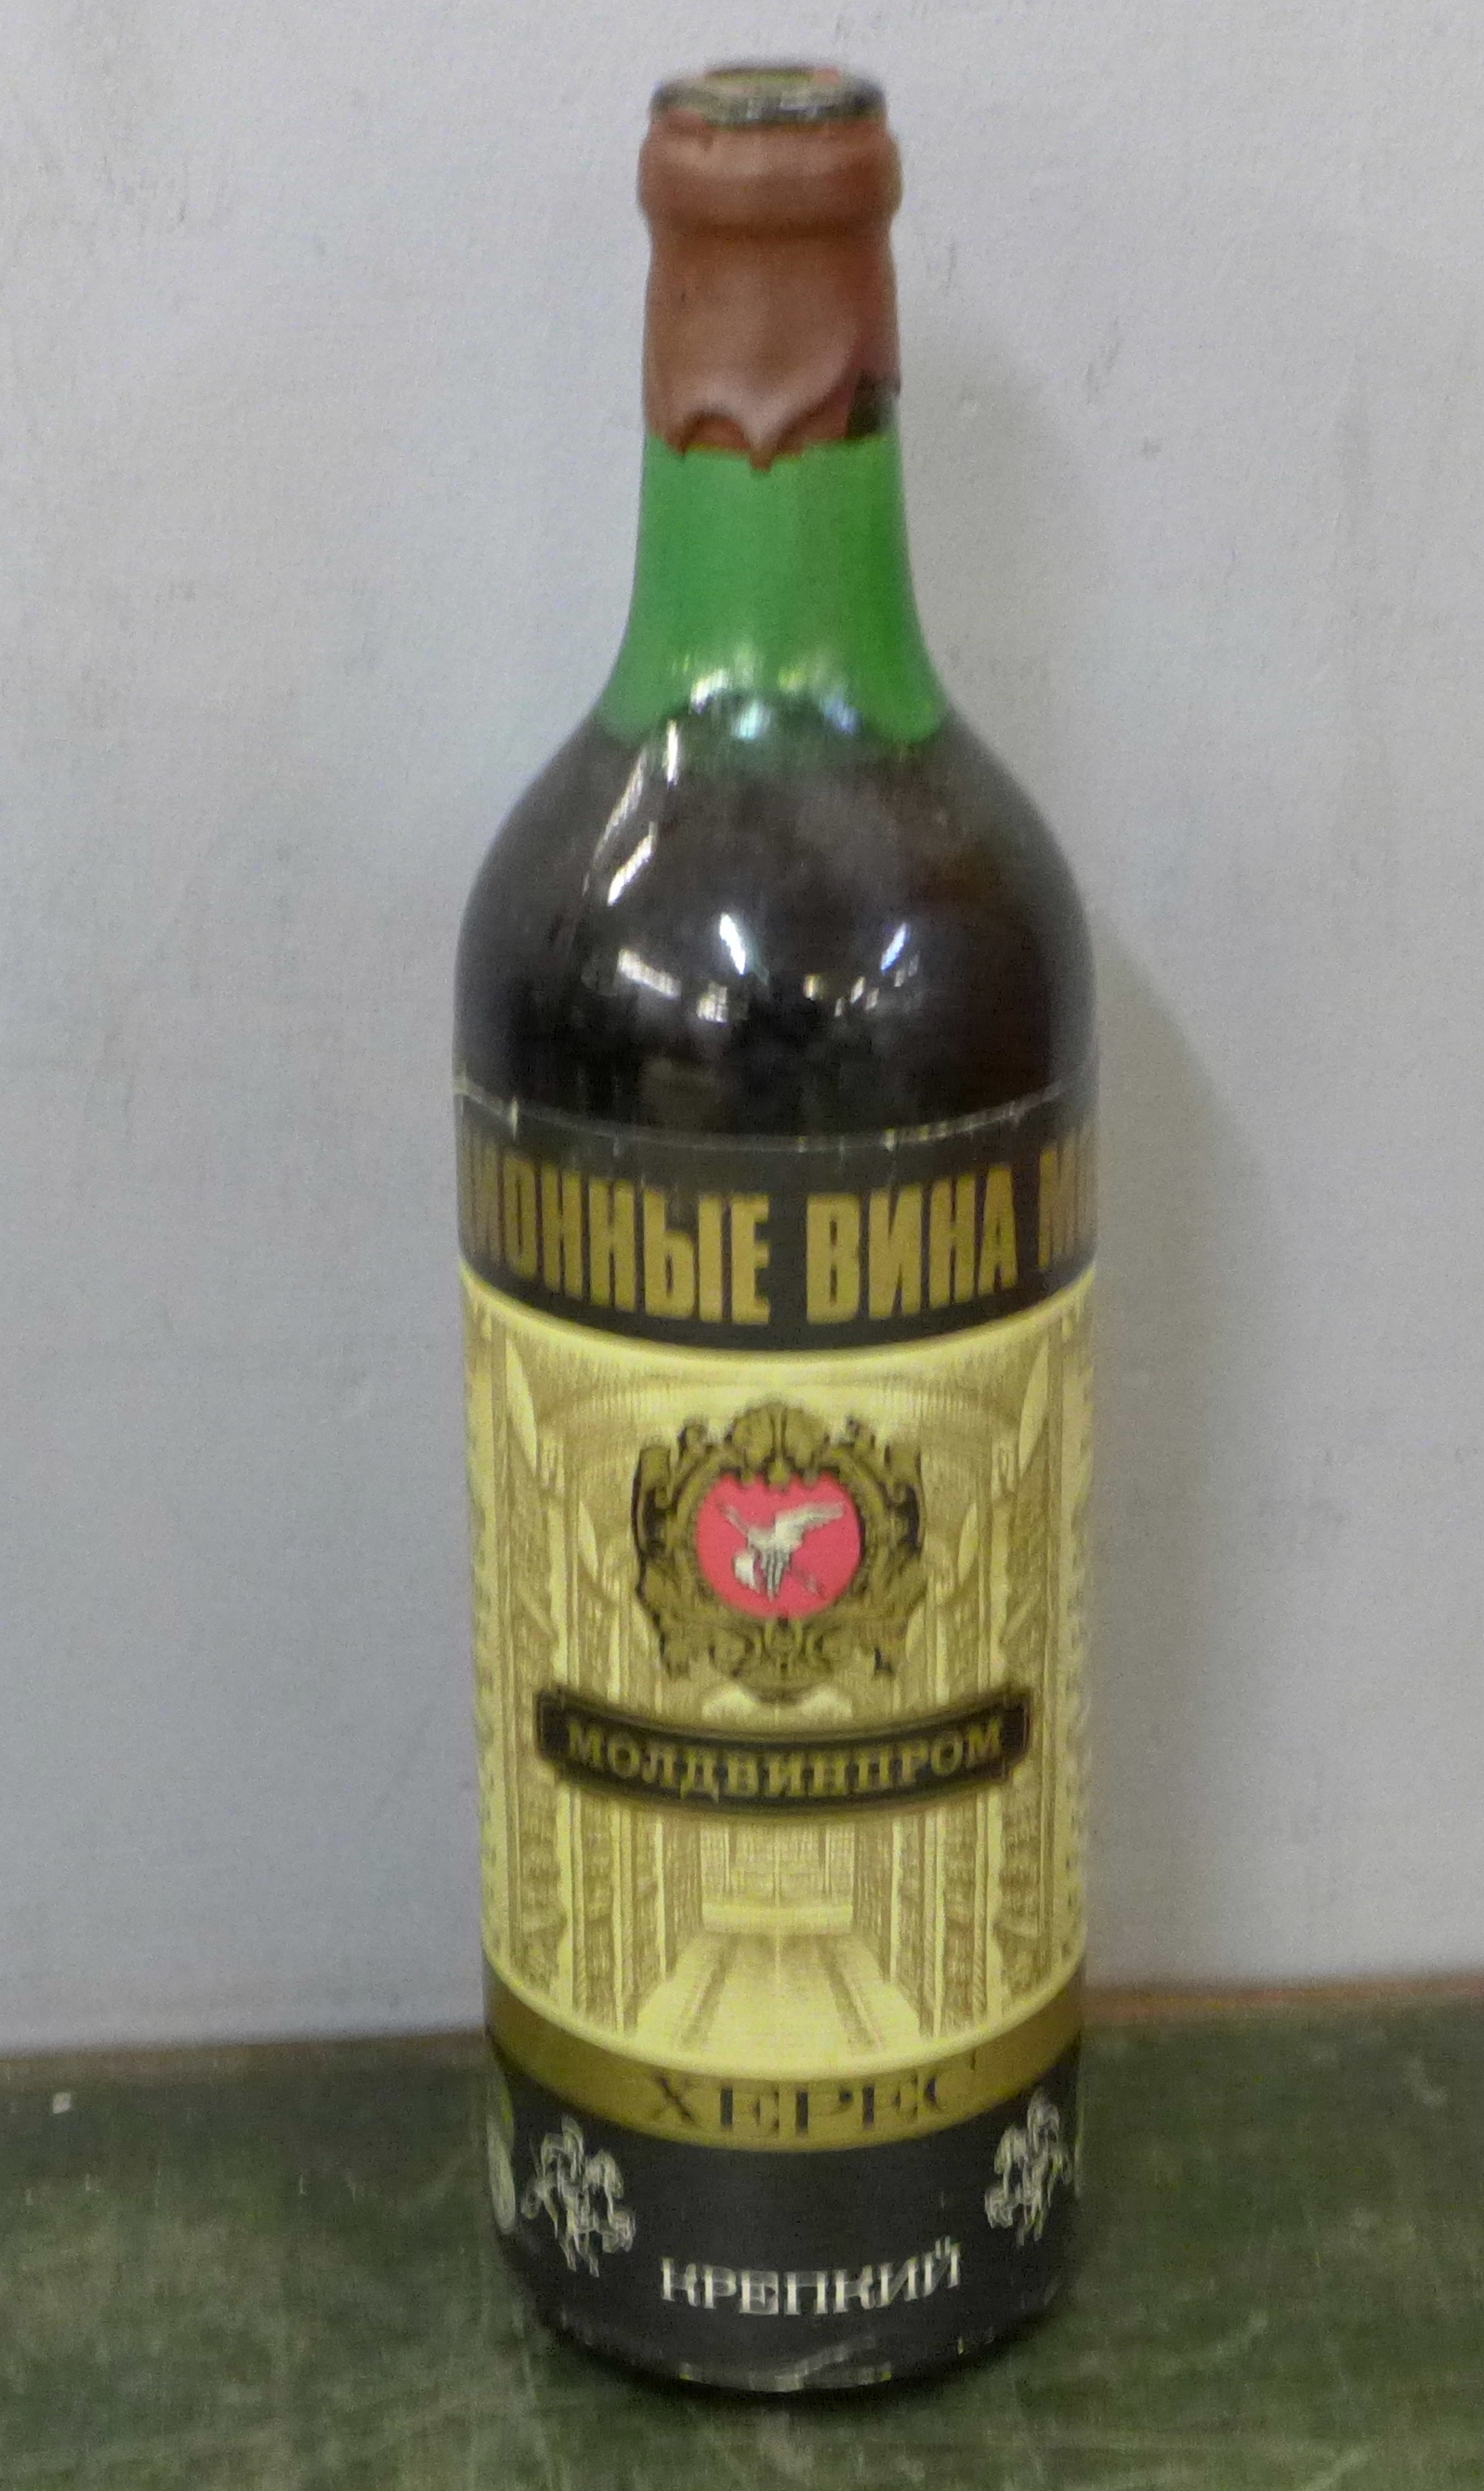 A bottle of Moldavian wine